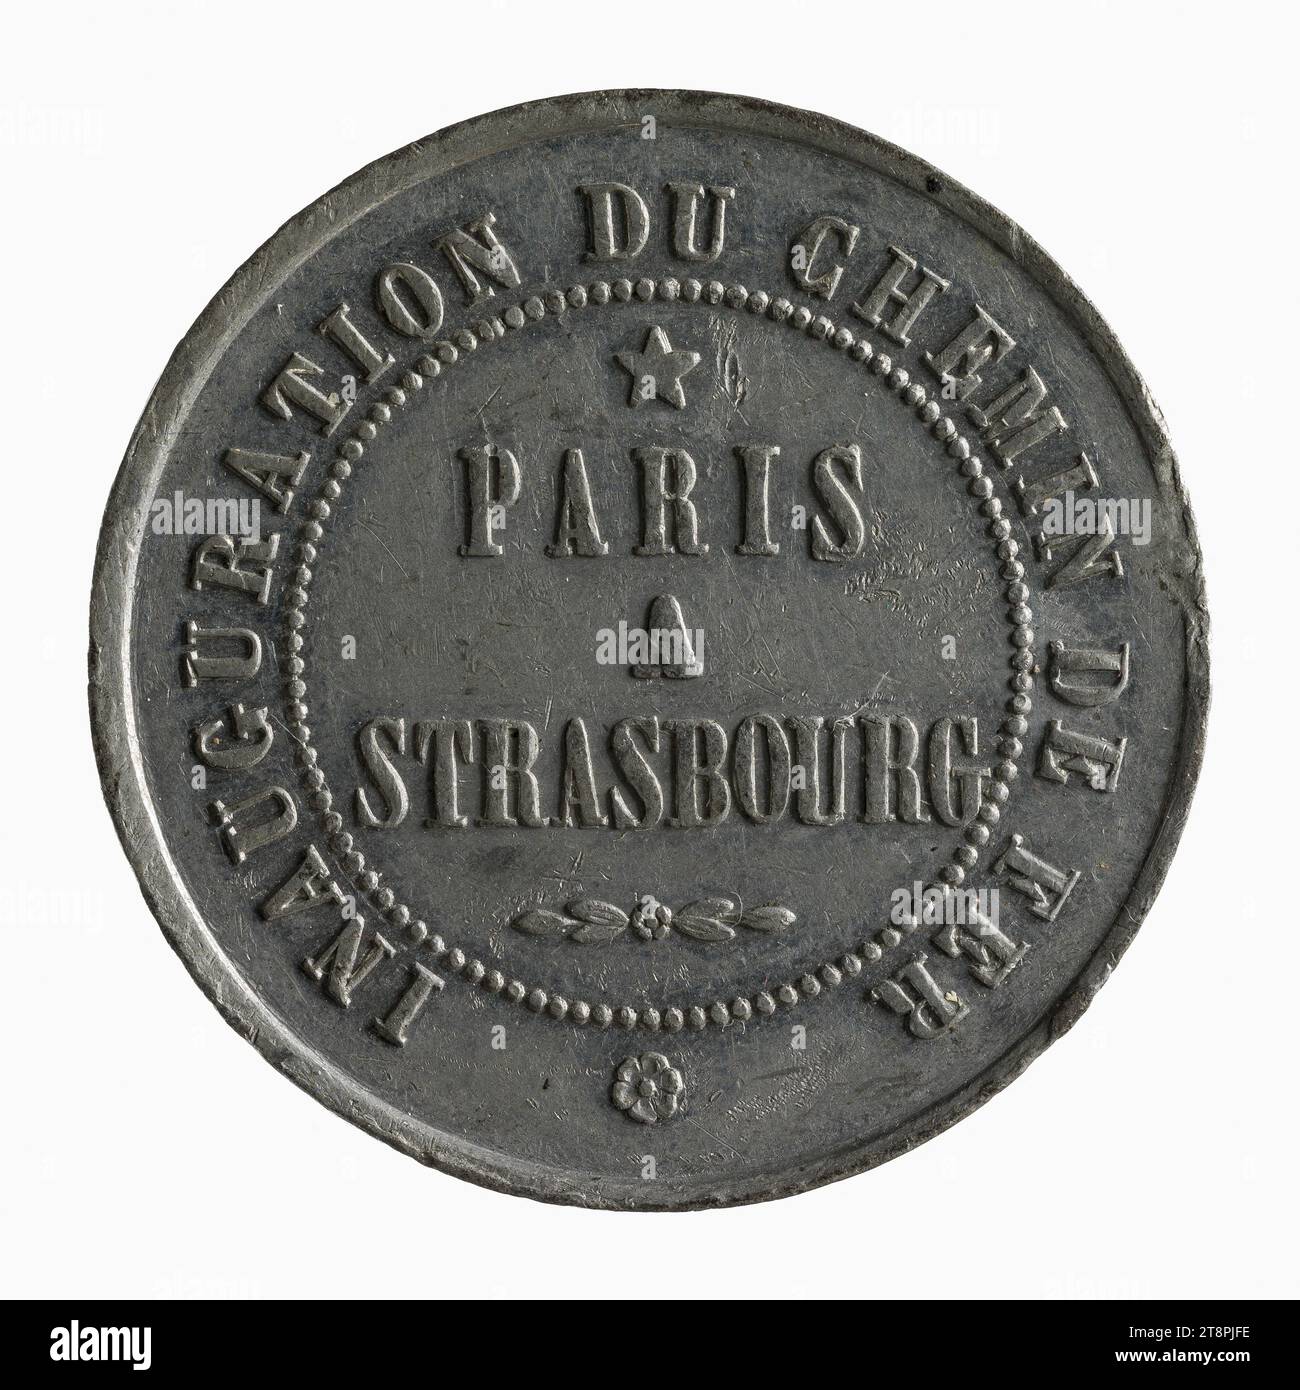 Einweihung der Eisenbahnstrecke Paris nach Straßburg in Anwesenheit von Prinz Louis-Napoleon, 18-19. Juli 1852, 1852 Numismatische Medaille, weißes Kupfer, Paris, Abmessungen - Arbeit: Durchmesser: 3,3 cm, Gewicht (Typengröße): 10,93 g Stockfoto